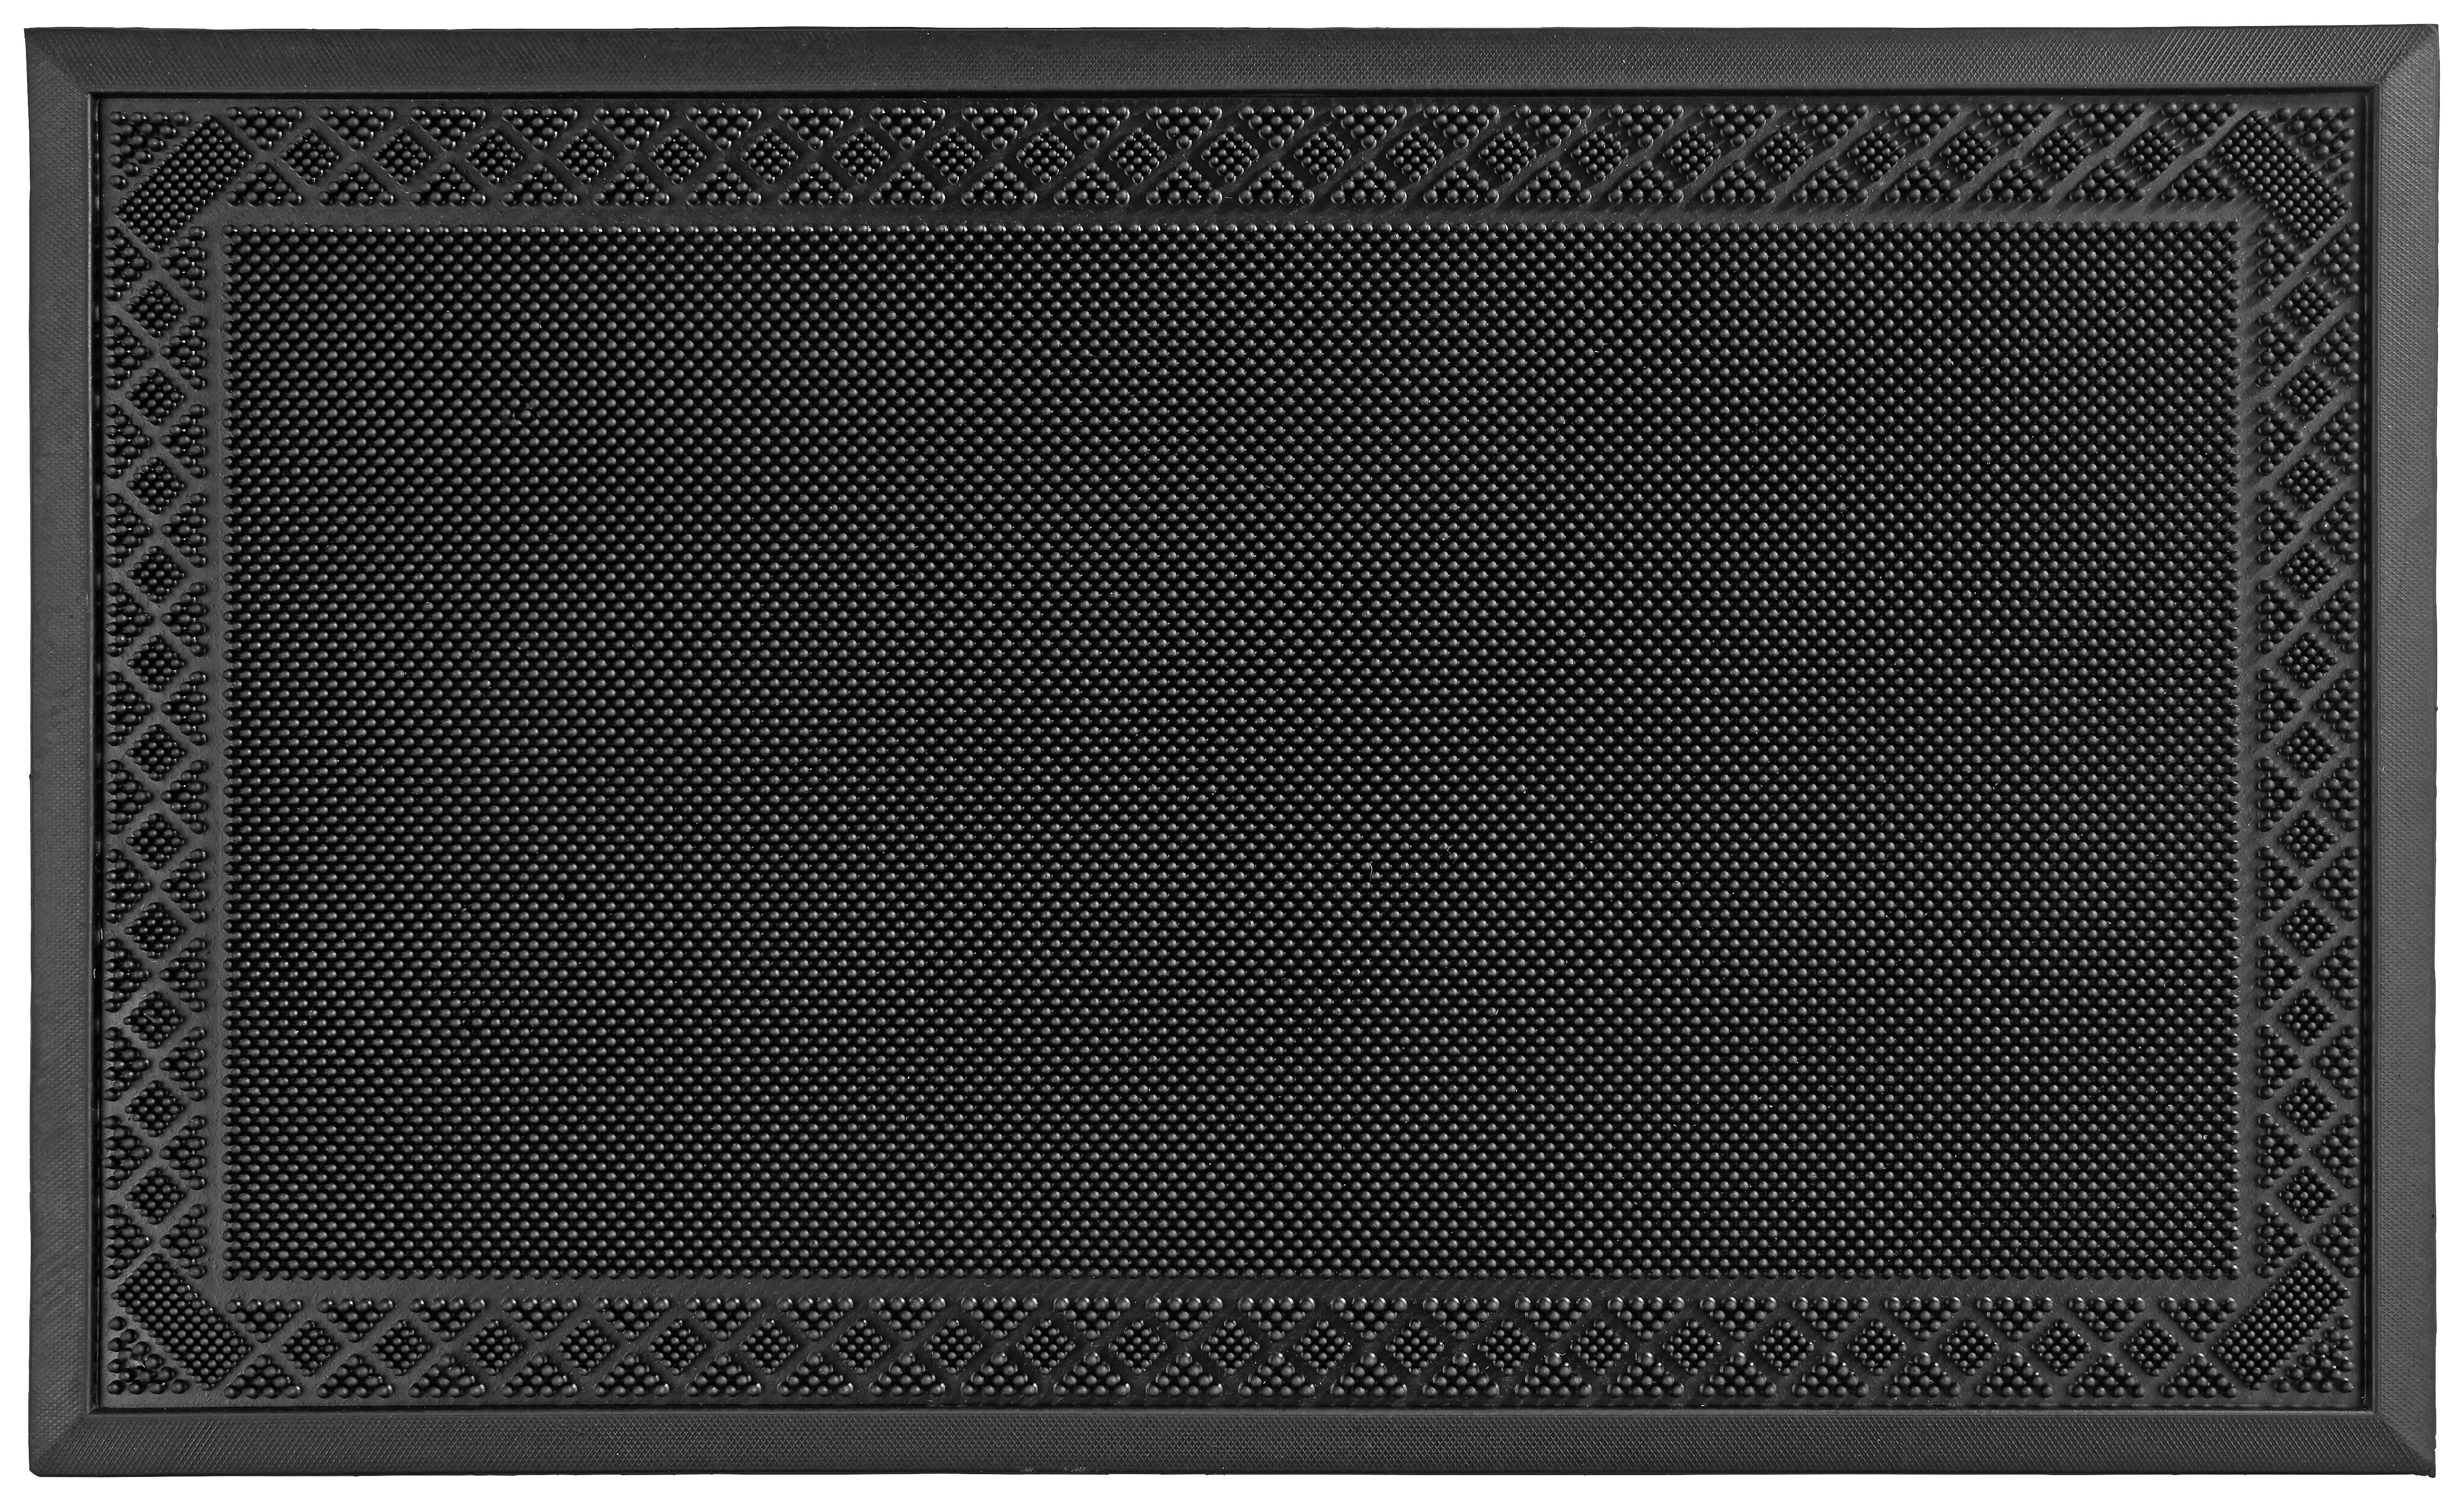 Dveřní Rohožka Linus, 60/80cm, Černá - černá, plast (60/80cm) - Modern Living